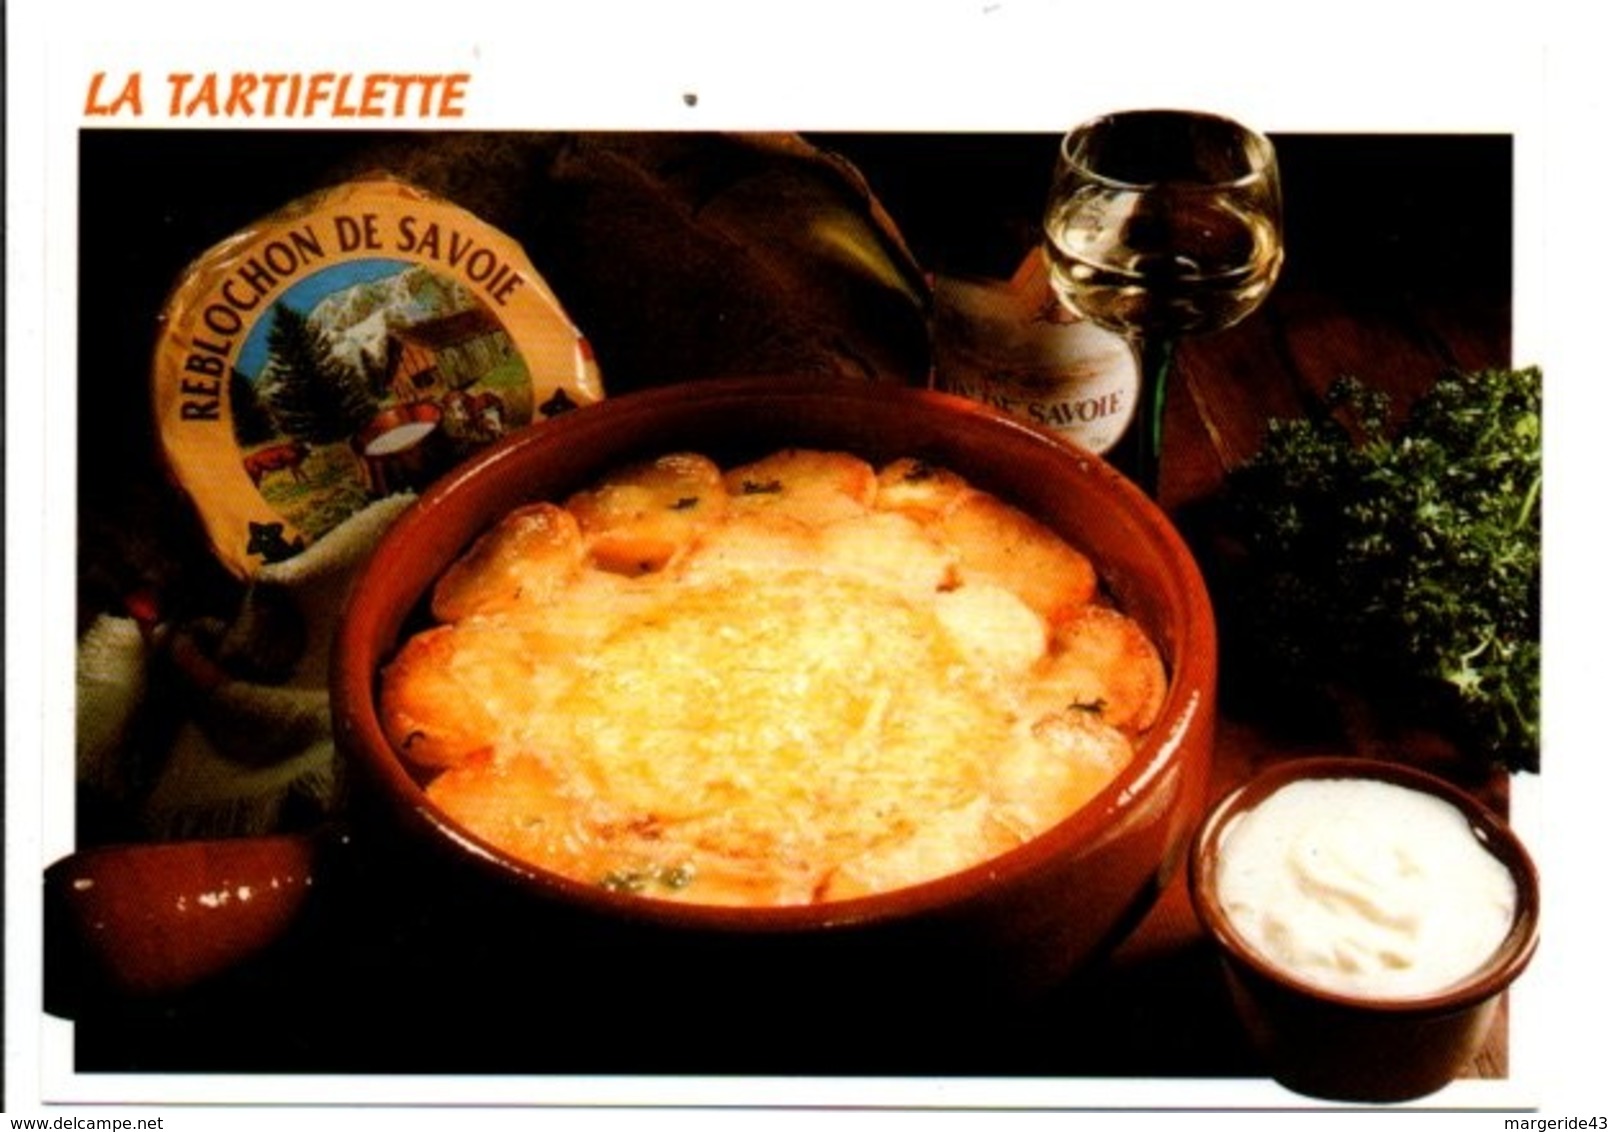 RECETTE - TARTIFLETTE - Ricette Di Cucina